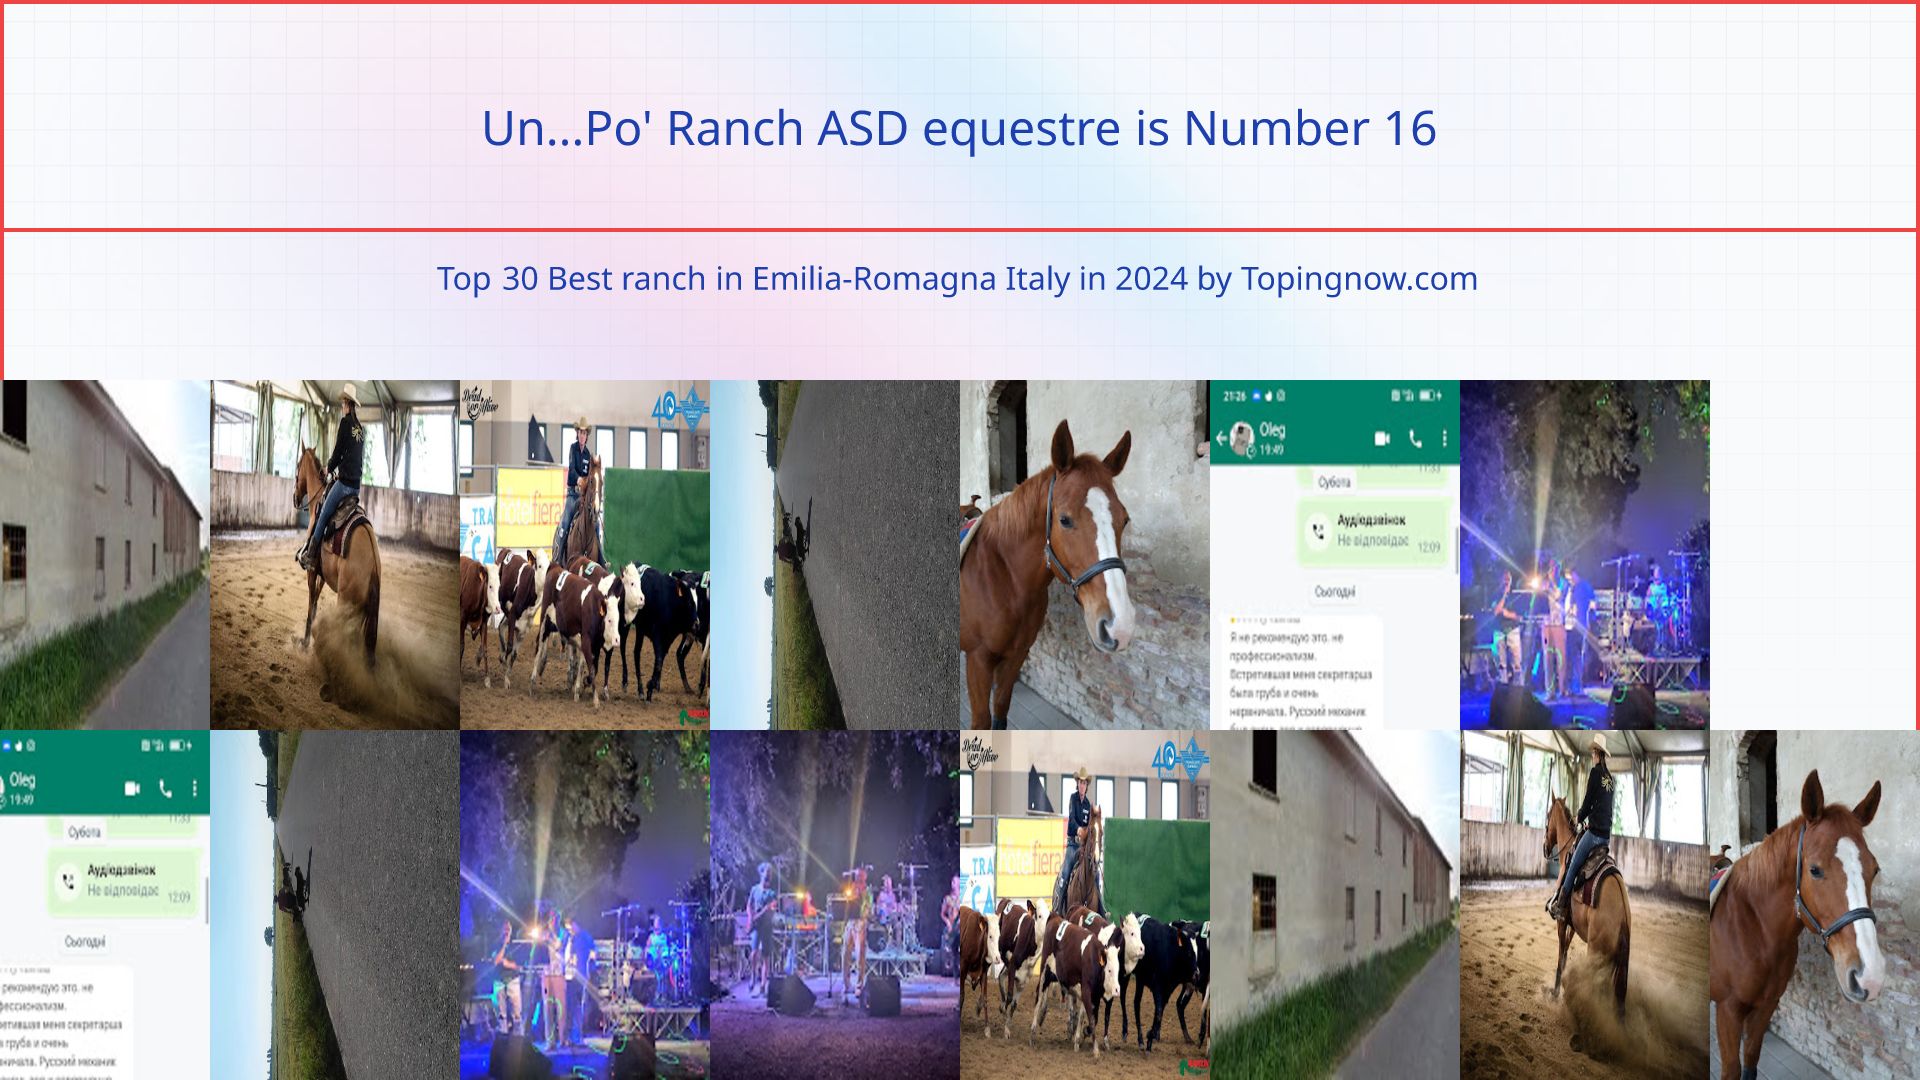 Un...Po' Ranch ASD equestre: Top 30 Best ranch in Emilia-Romagna Italy in 2024